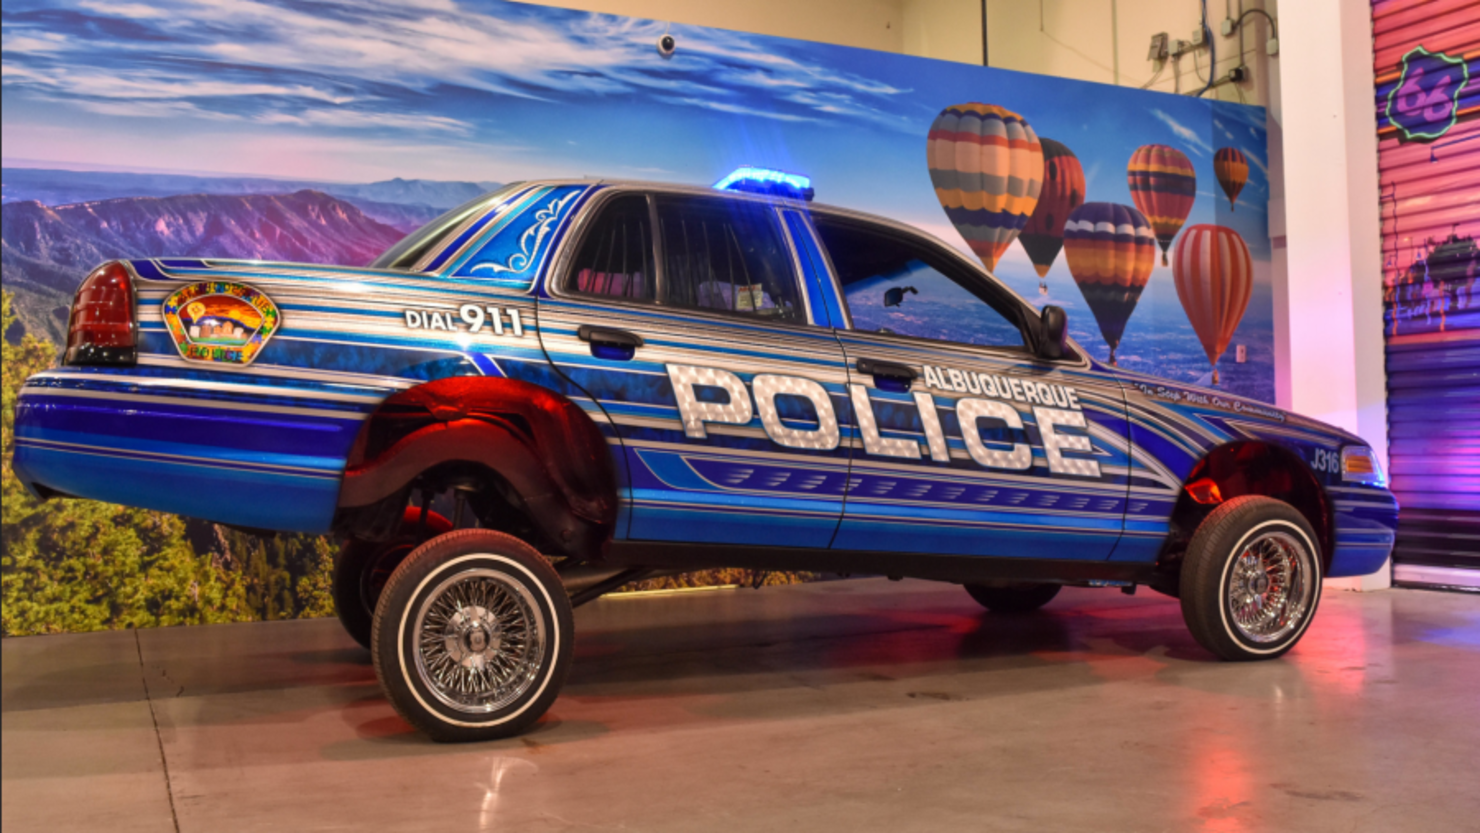 PHOTO: Albuquerque Police Department